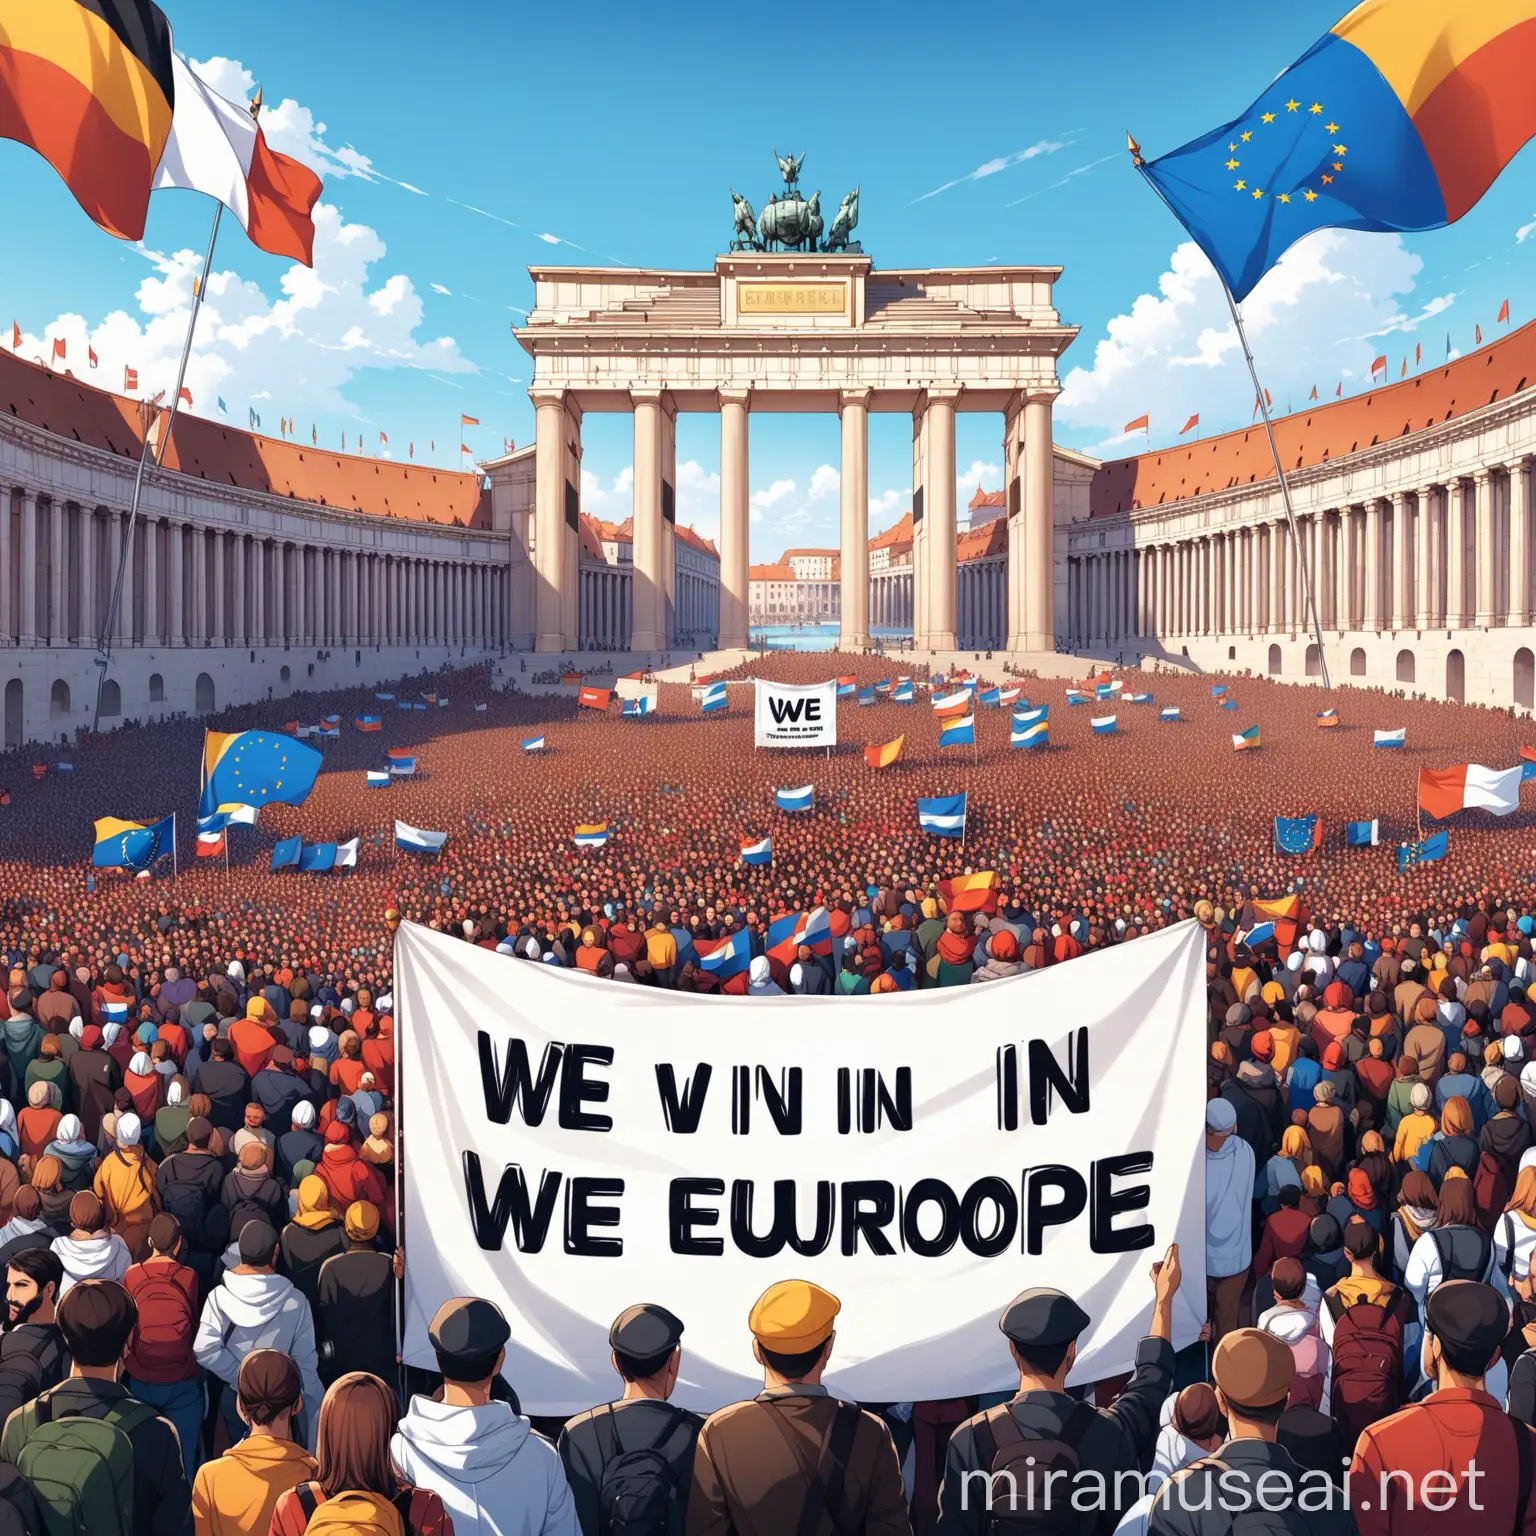 viele Menschen mit einem Plakat mit der Auschrift , wir in Europa, und europäische Flaggen
Vor der Kulisse der europäischen Denkmäler